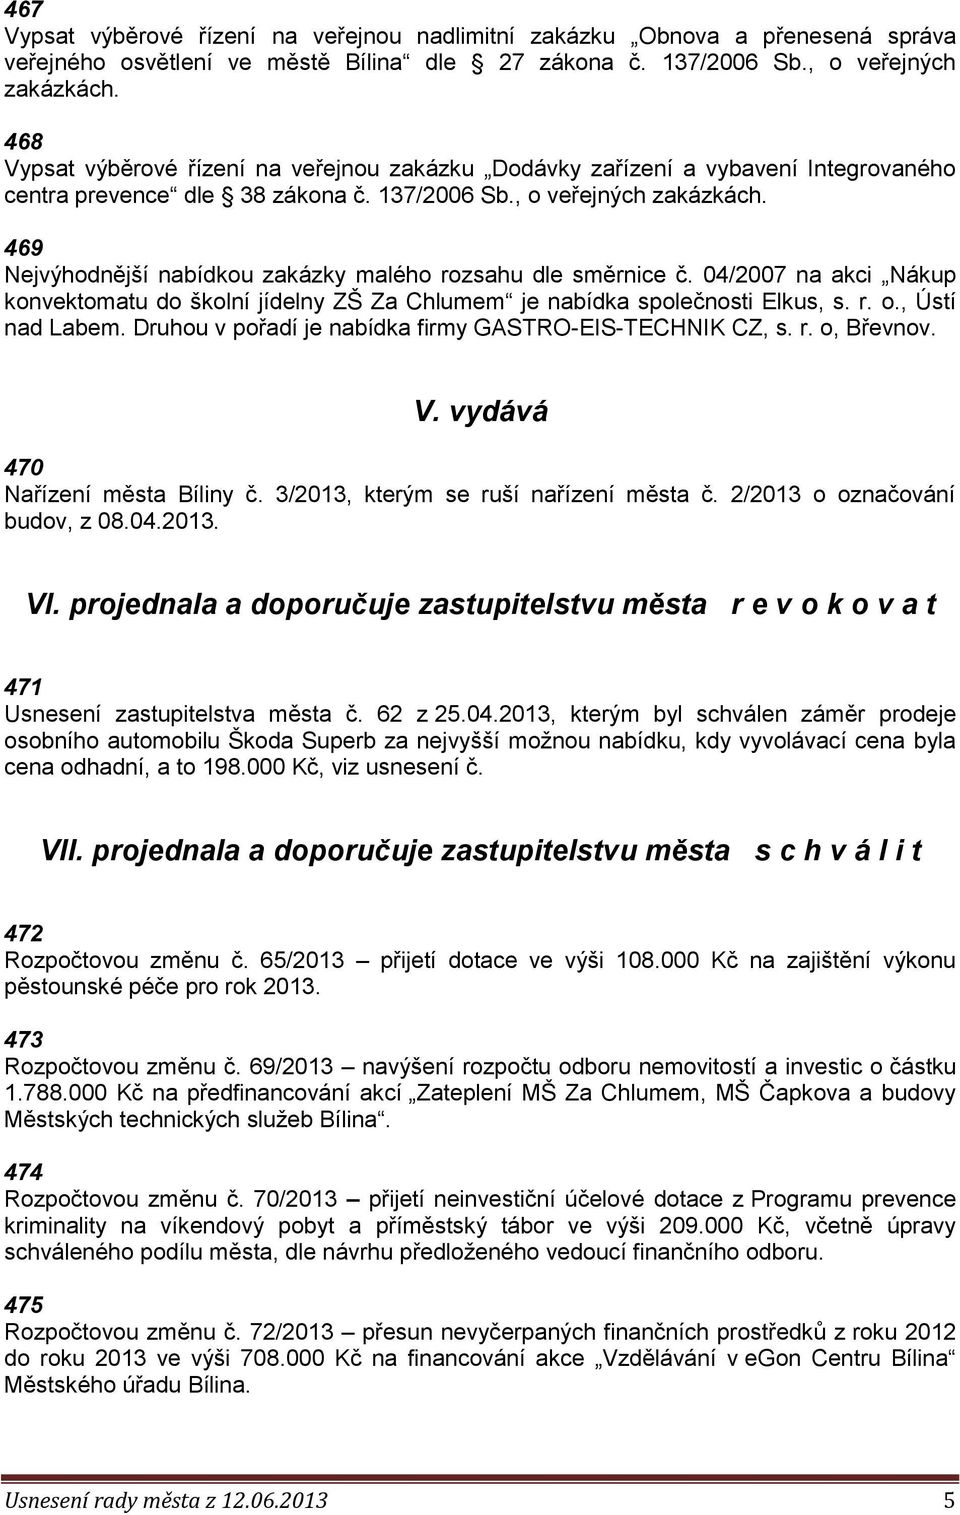 469 Nejvýhodnější nabídkou zakázky malého rozsahu dle směrnice č. 04/2007 na akci Nákup konvektomatu do školní jídelny ZŠ Za Chlumem je nabídka společnosti Elkus, s. r. o., Ústí nad Labem.